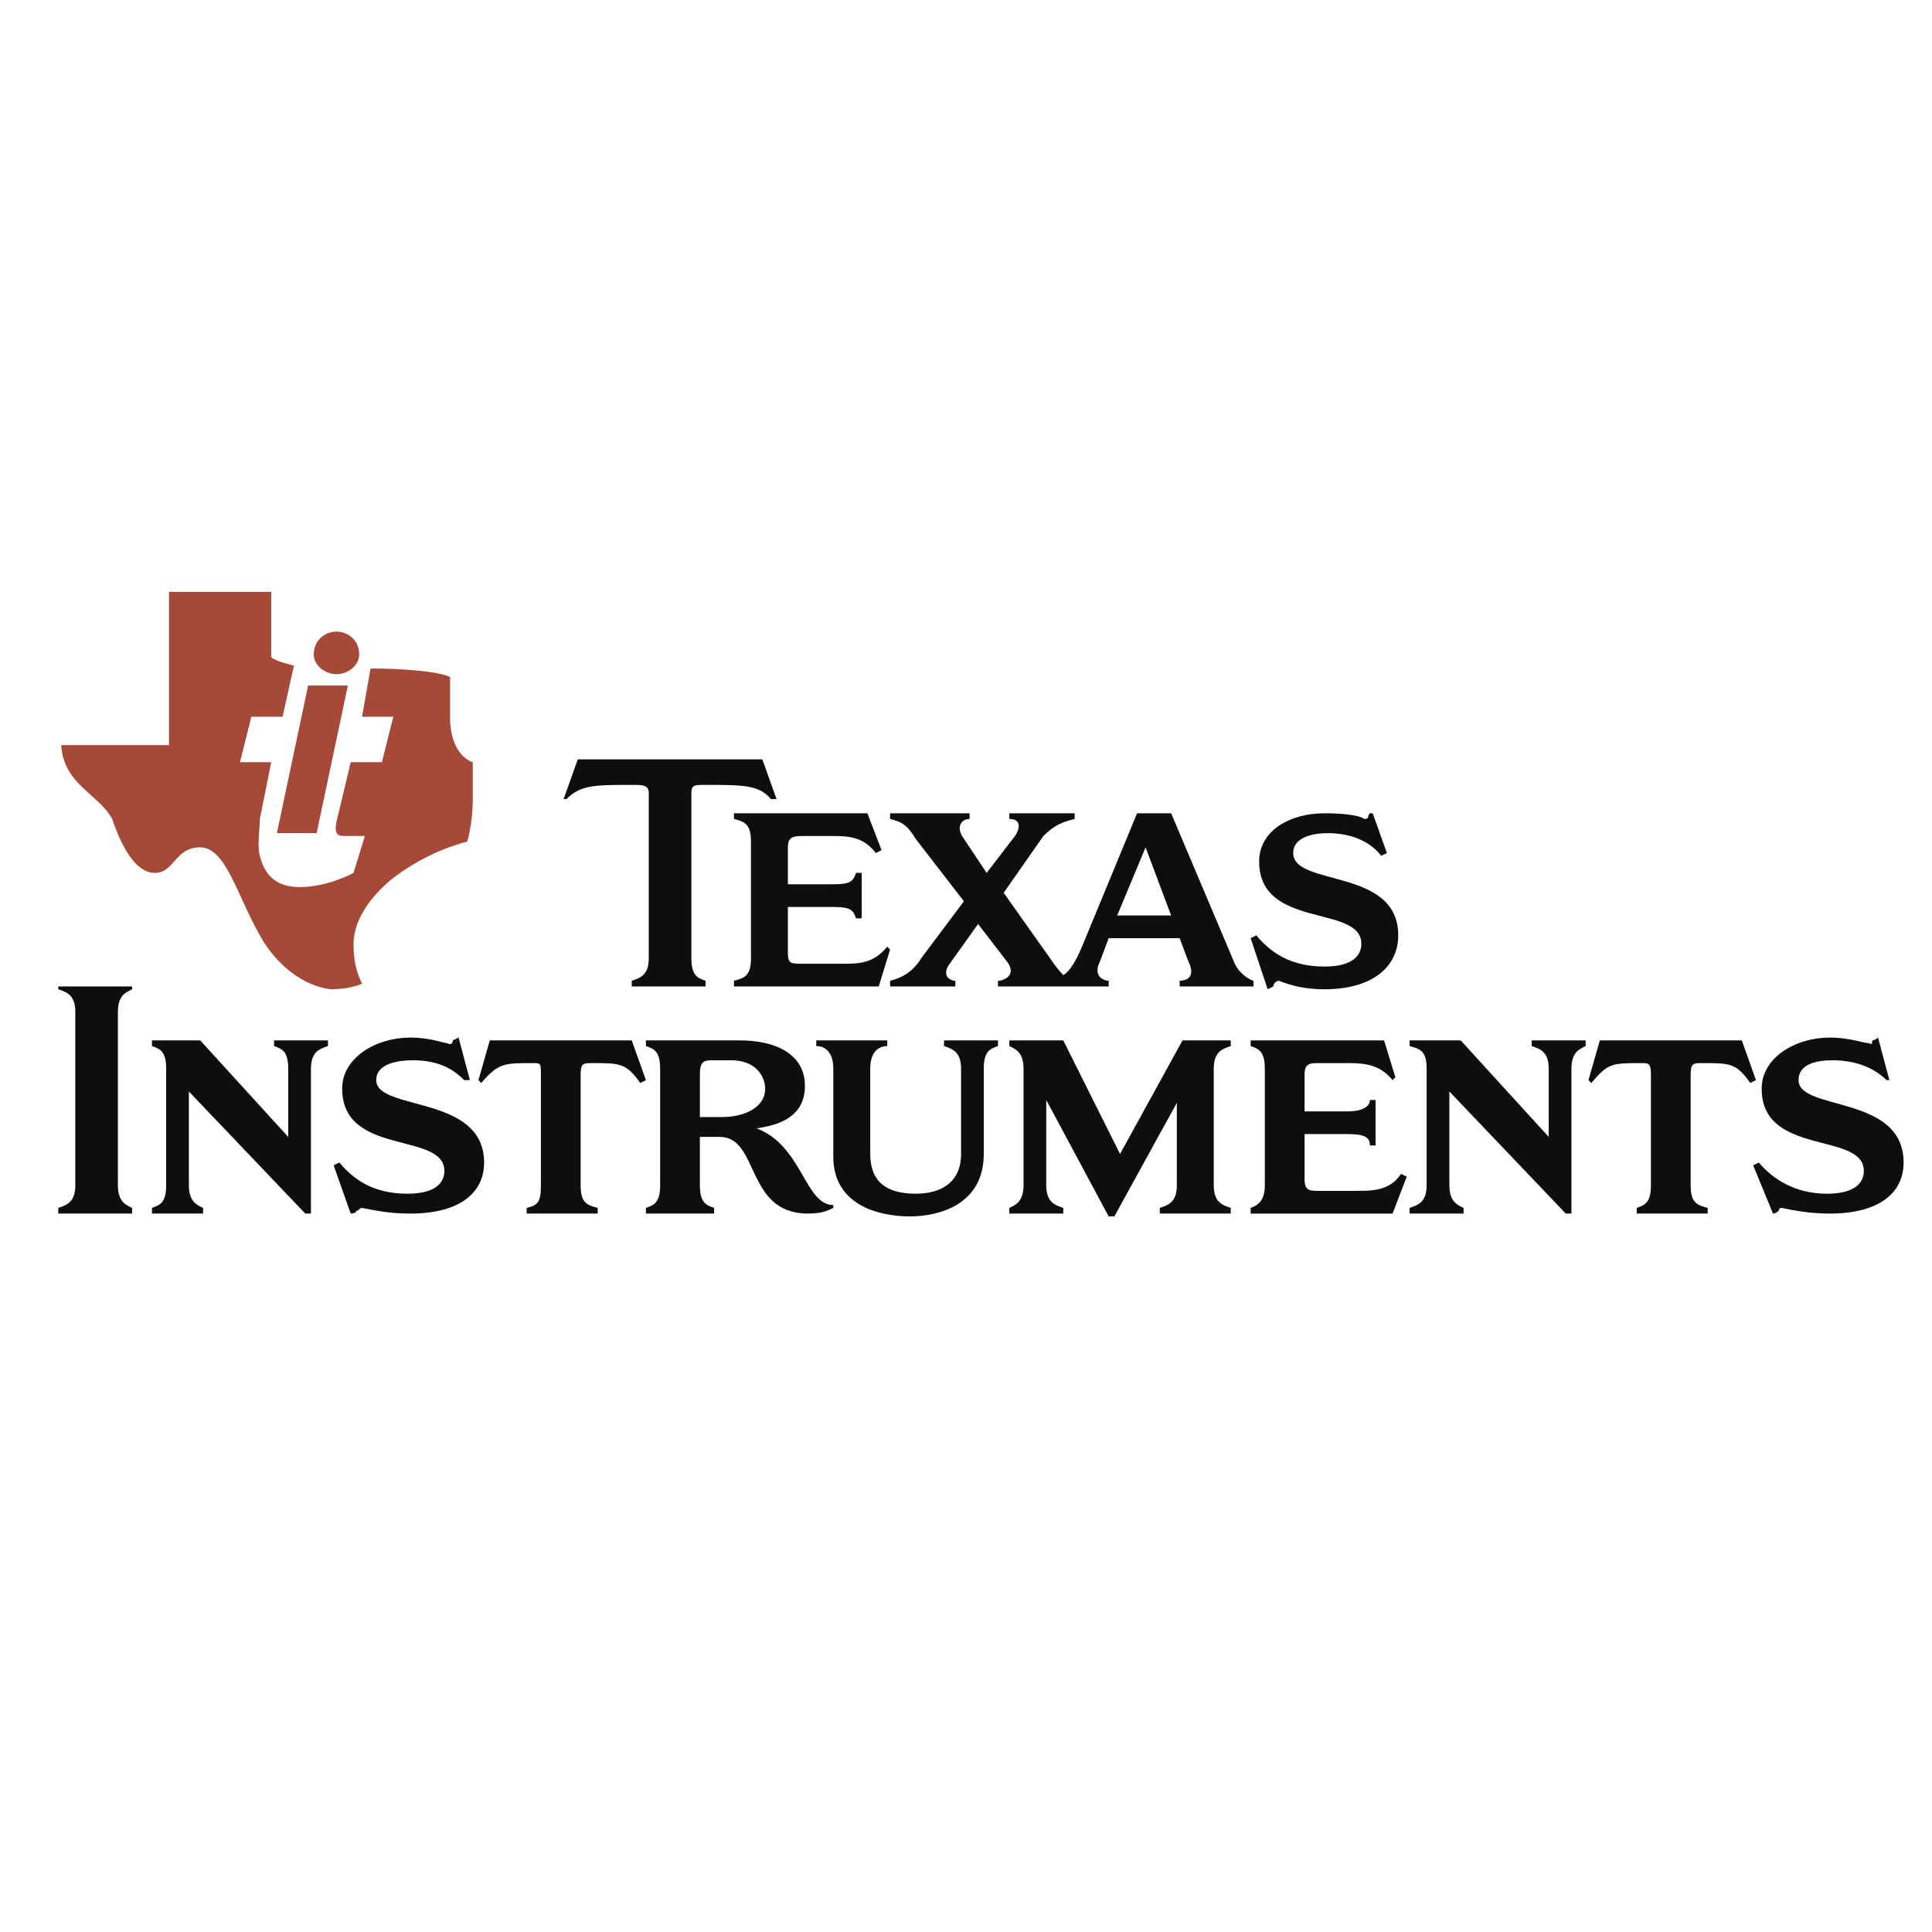 Texas Instruments logo colors